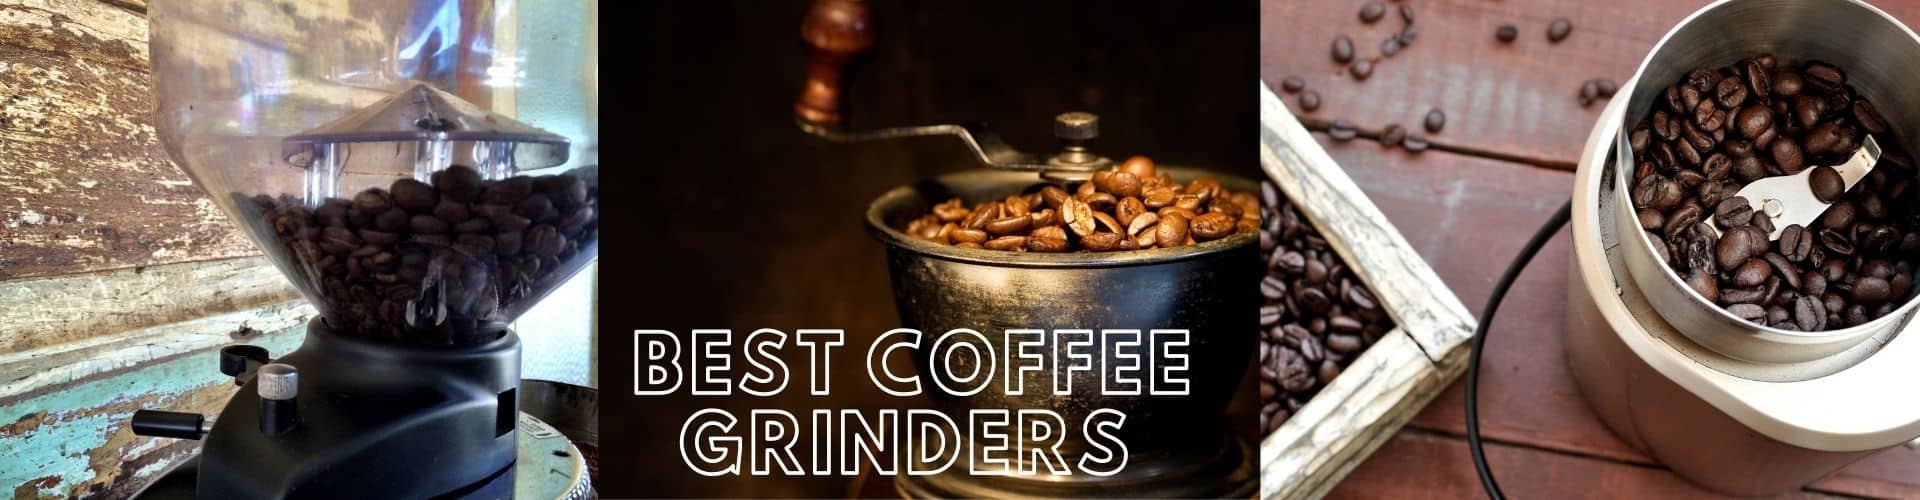 The Best Coffee Grinders